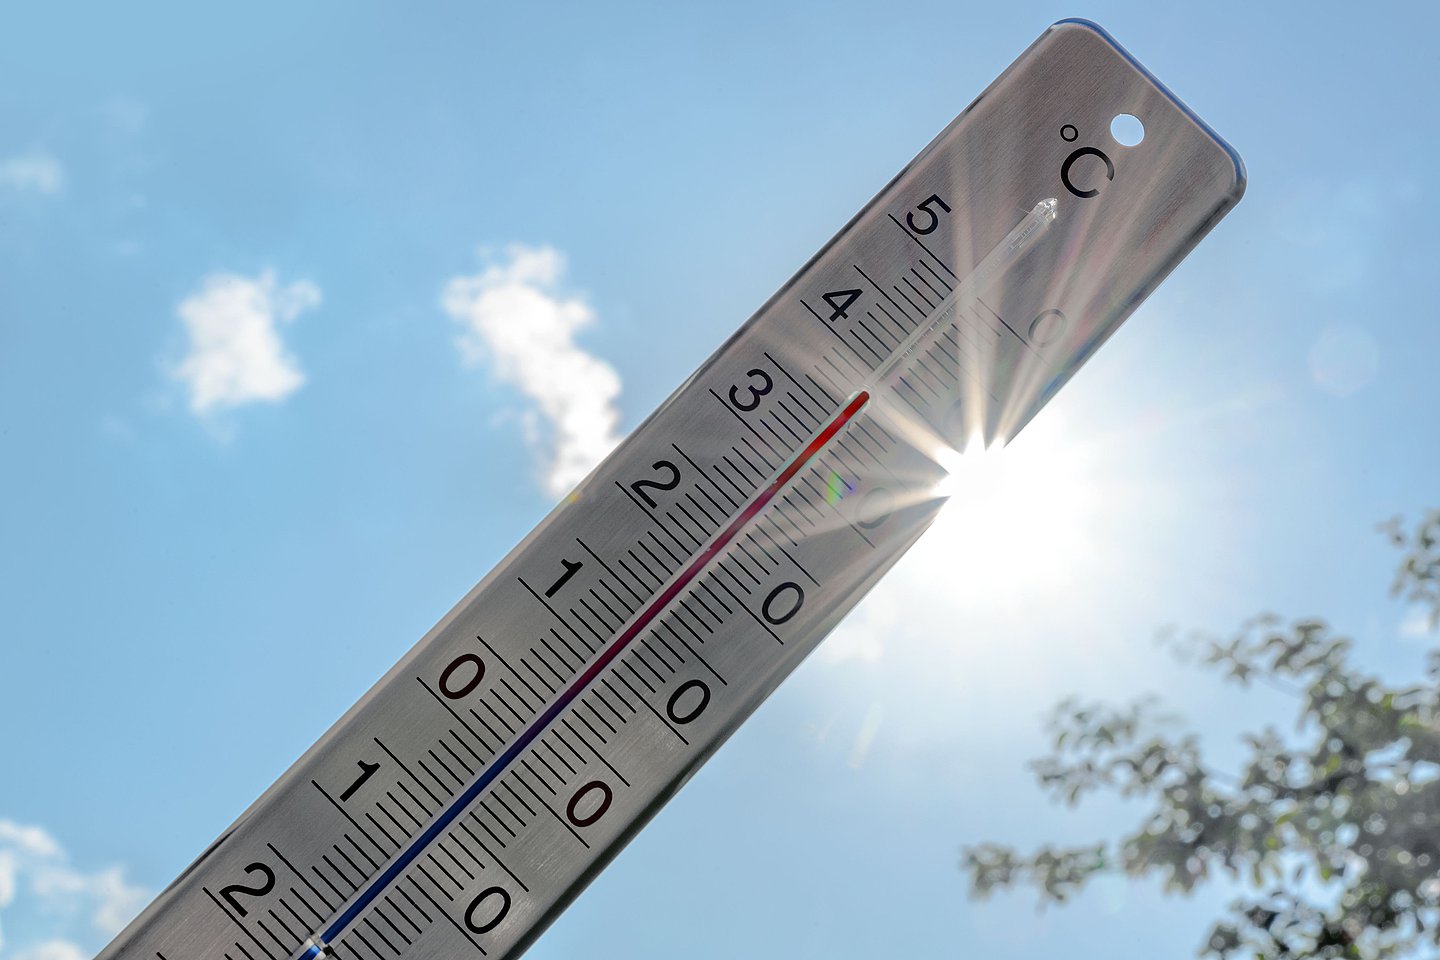 Schmuckbild mit Thermometer, das heiße Temperatur anzeigt